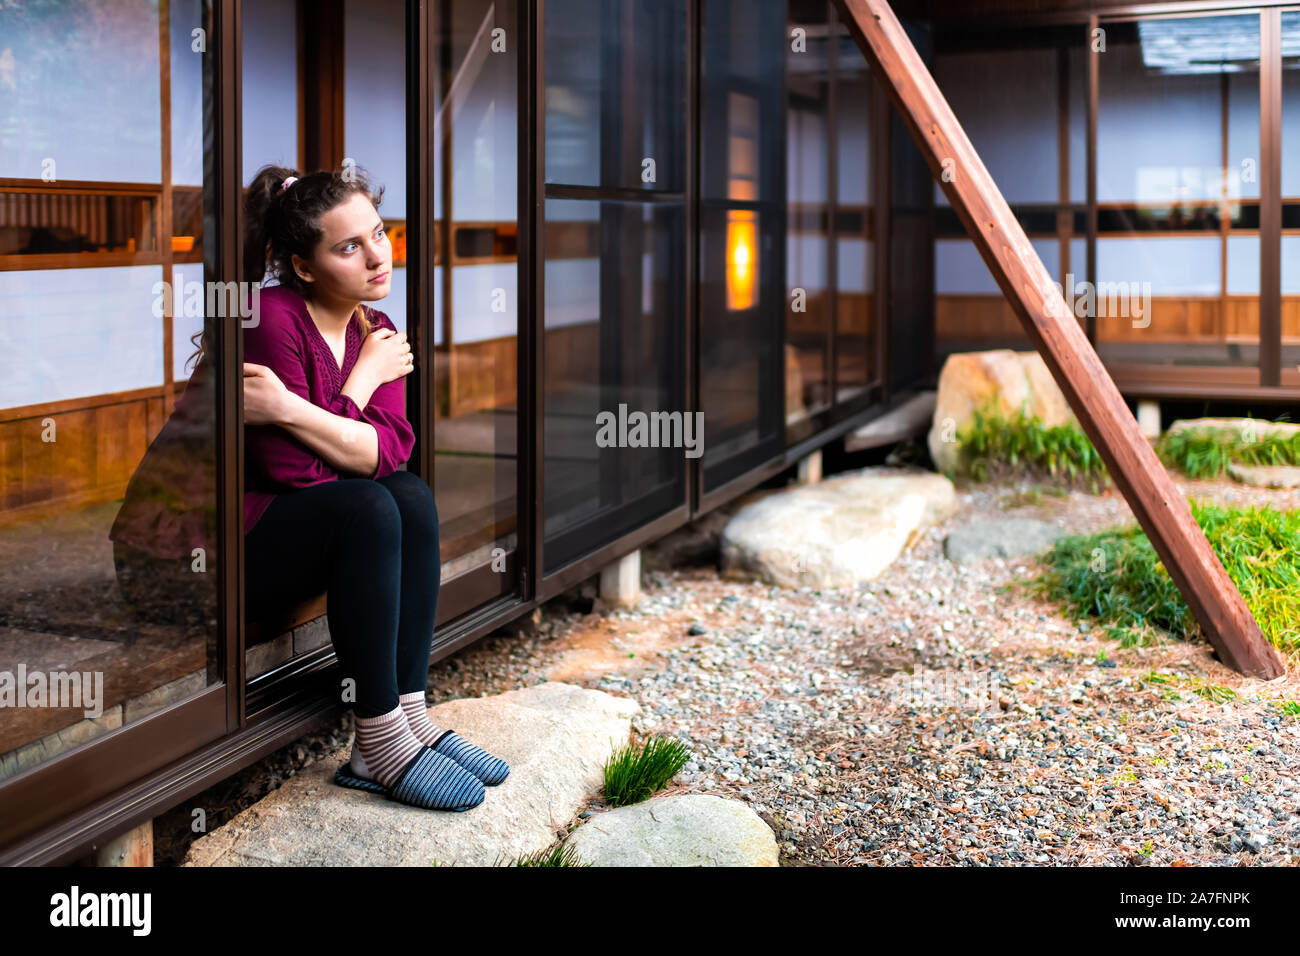 Junge Mädchen Frau sitzen Denken in Japan durch offene Fenster Schiebetür  indoor auf traditionellen Japanischen Garten mit Kies Stein im Haus  Stockfotografie - Alamy